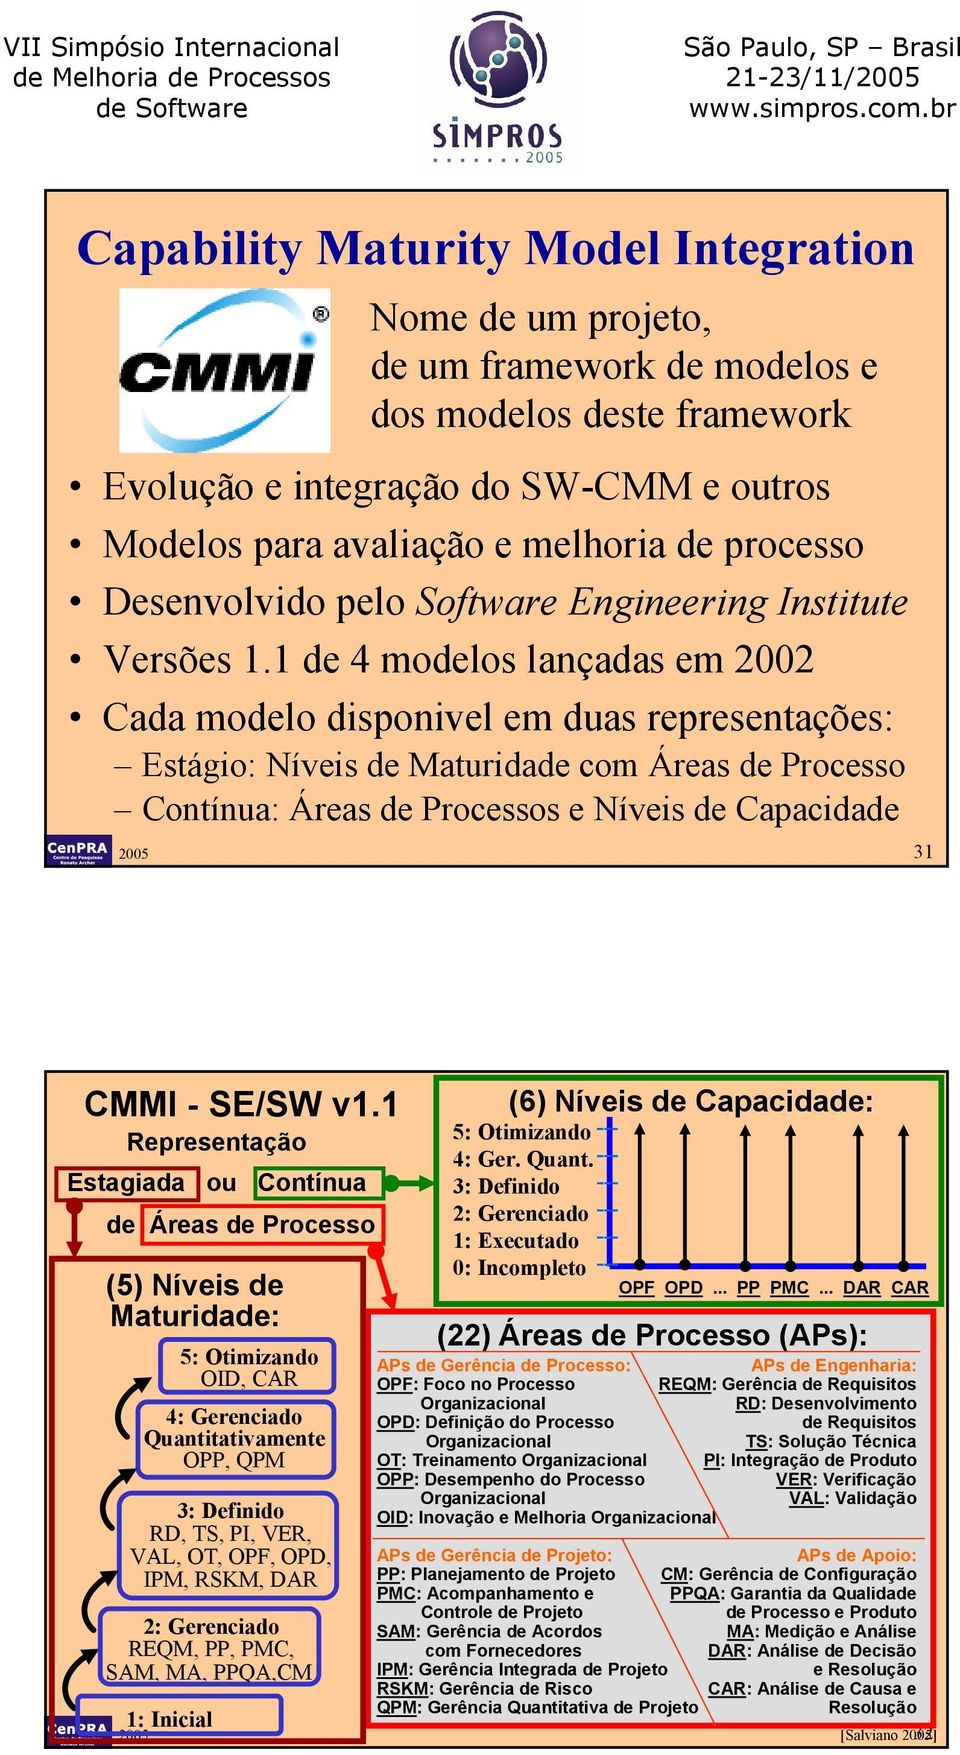 1 de 4 modelos lançadas em 2002 Cada modelo disponivel em duas representações: Estágio: Níveis de Maturidade Áreas de Processo Contínua: Áreas de Processos e Níveis de Capacidade 2005 31 CMMI - SE/SW